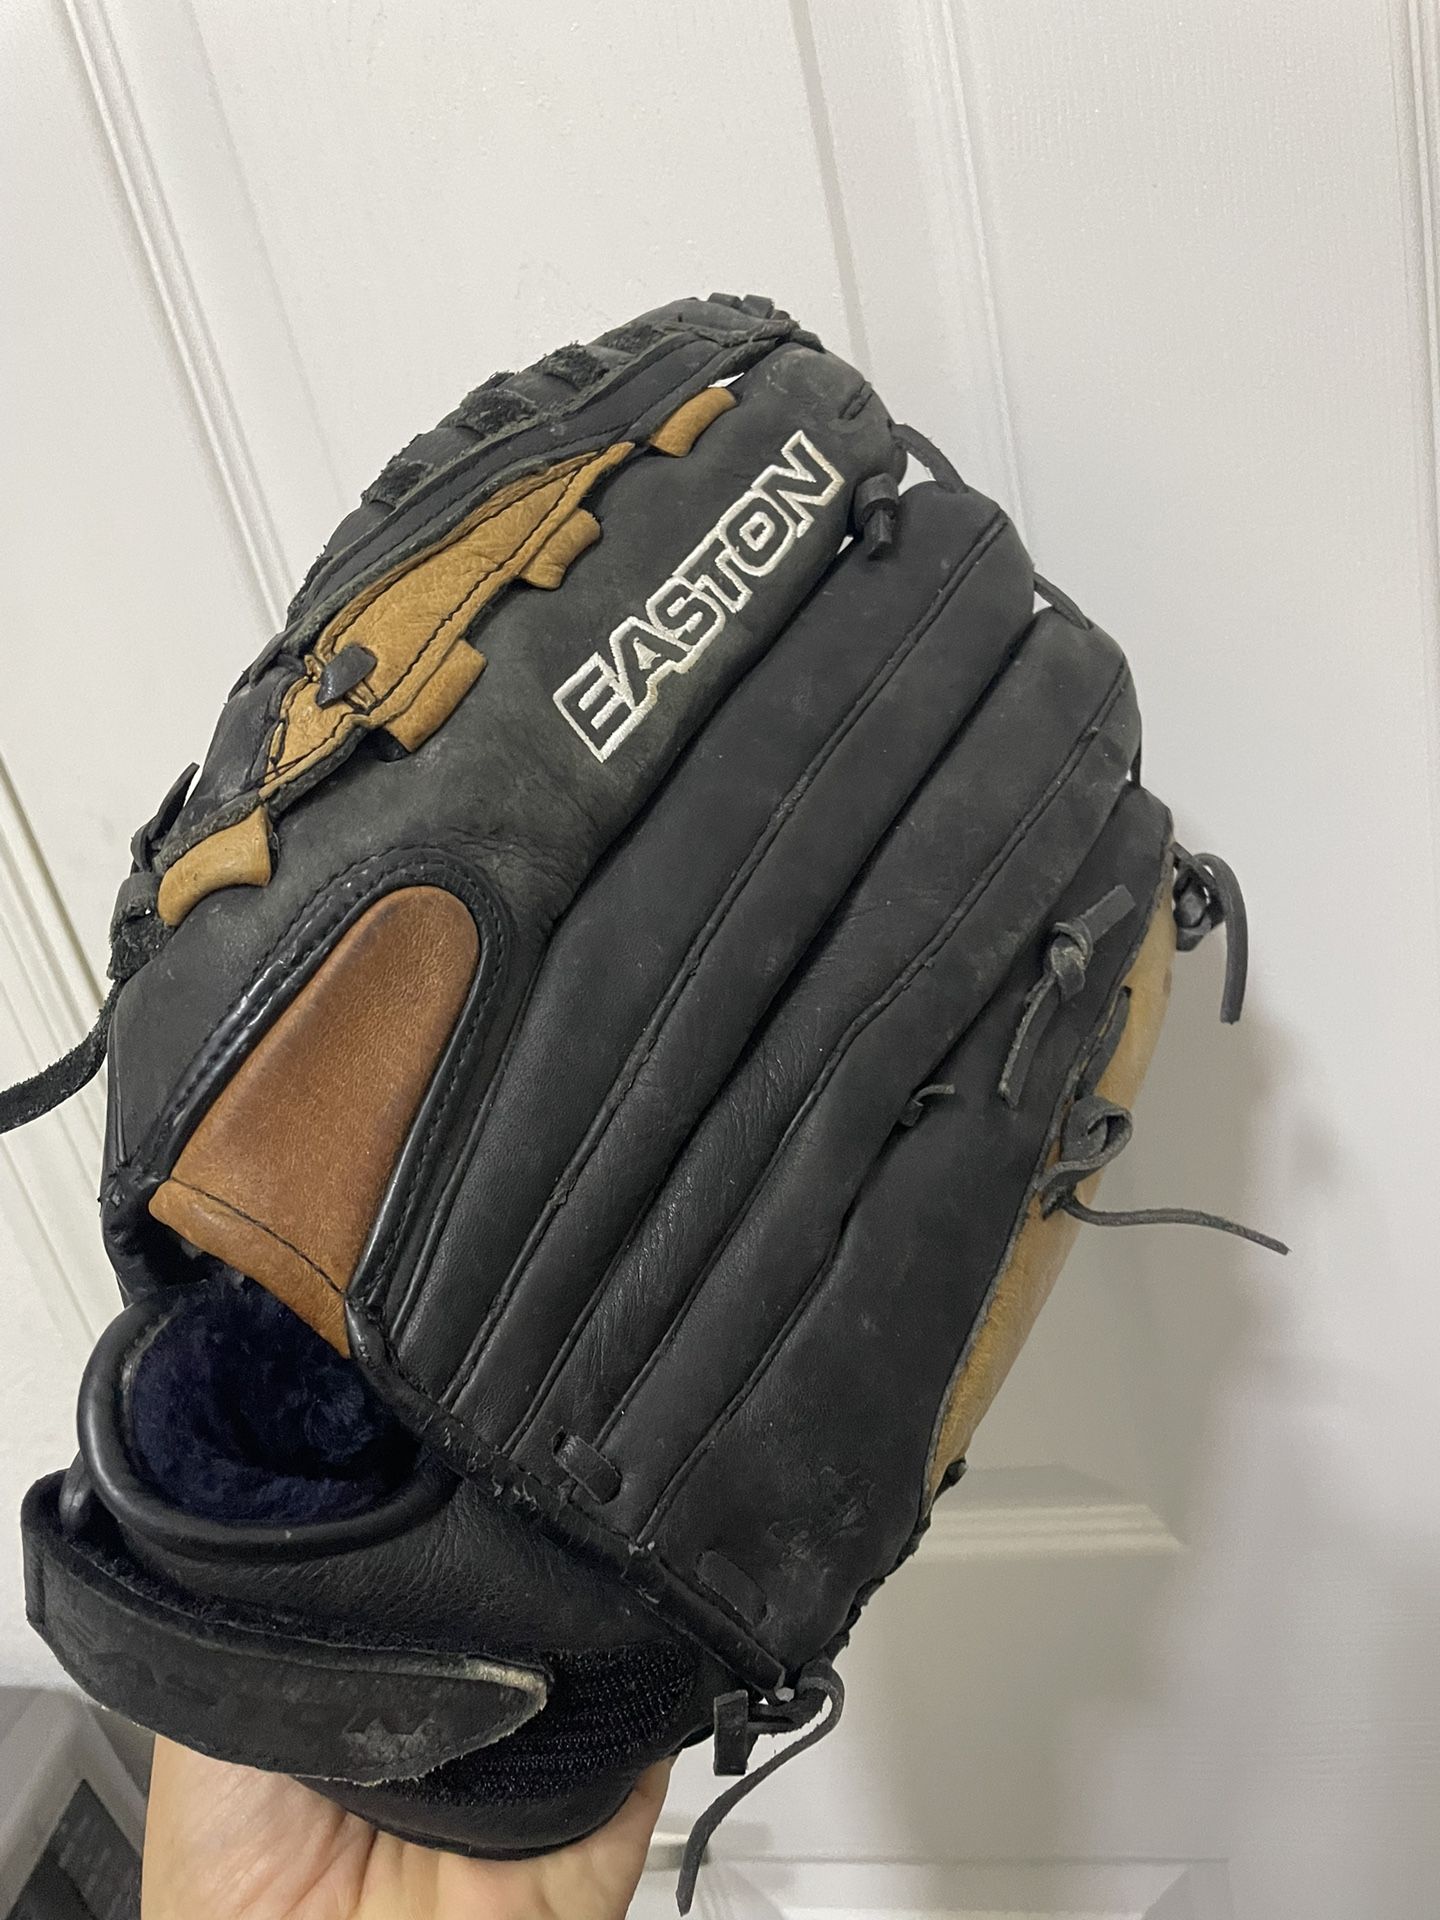 Easton Baseball Glove R14 Size  